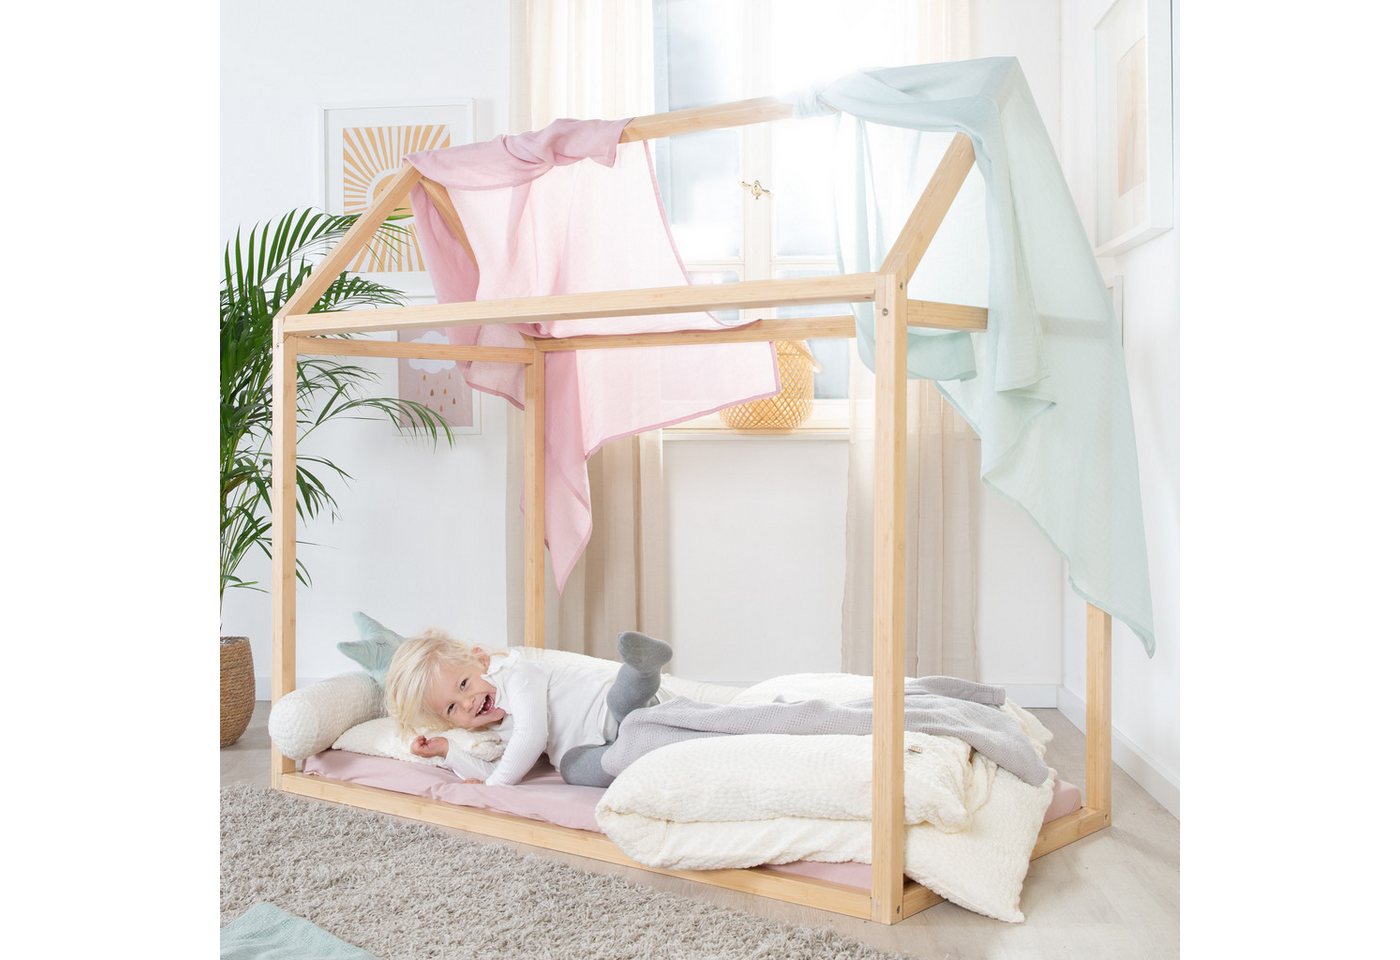 roba® Kinderbett 70 x 140 cm - nach Montessori Prinzip - FSC zertifiziertes Massivholz, Hausbett - Babybett zum Spielen, Lesen & Kuscheln - Bambus natur von roba®